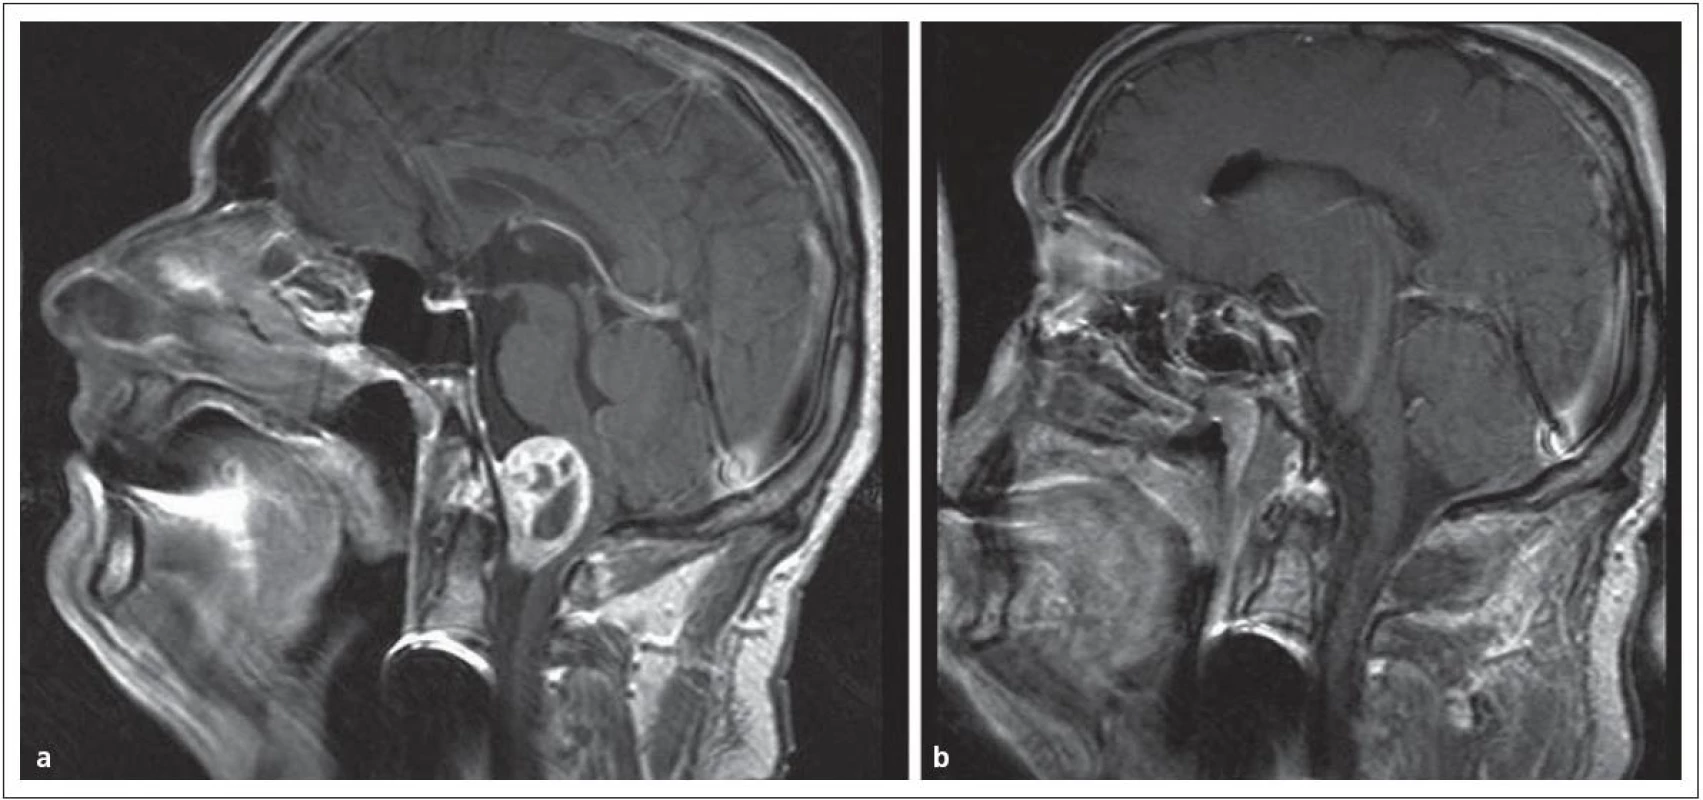 Meningeom v přední části foramen occipitale magnum.
Obr. 13a) V obraze MR před operací.
Obr. 13b) Po radikálním odstranění „far lateral přístupem“.